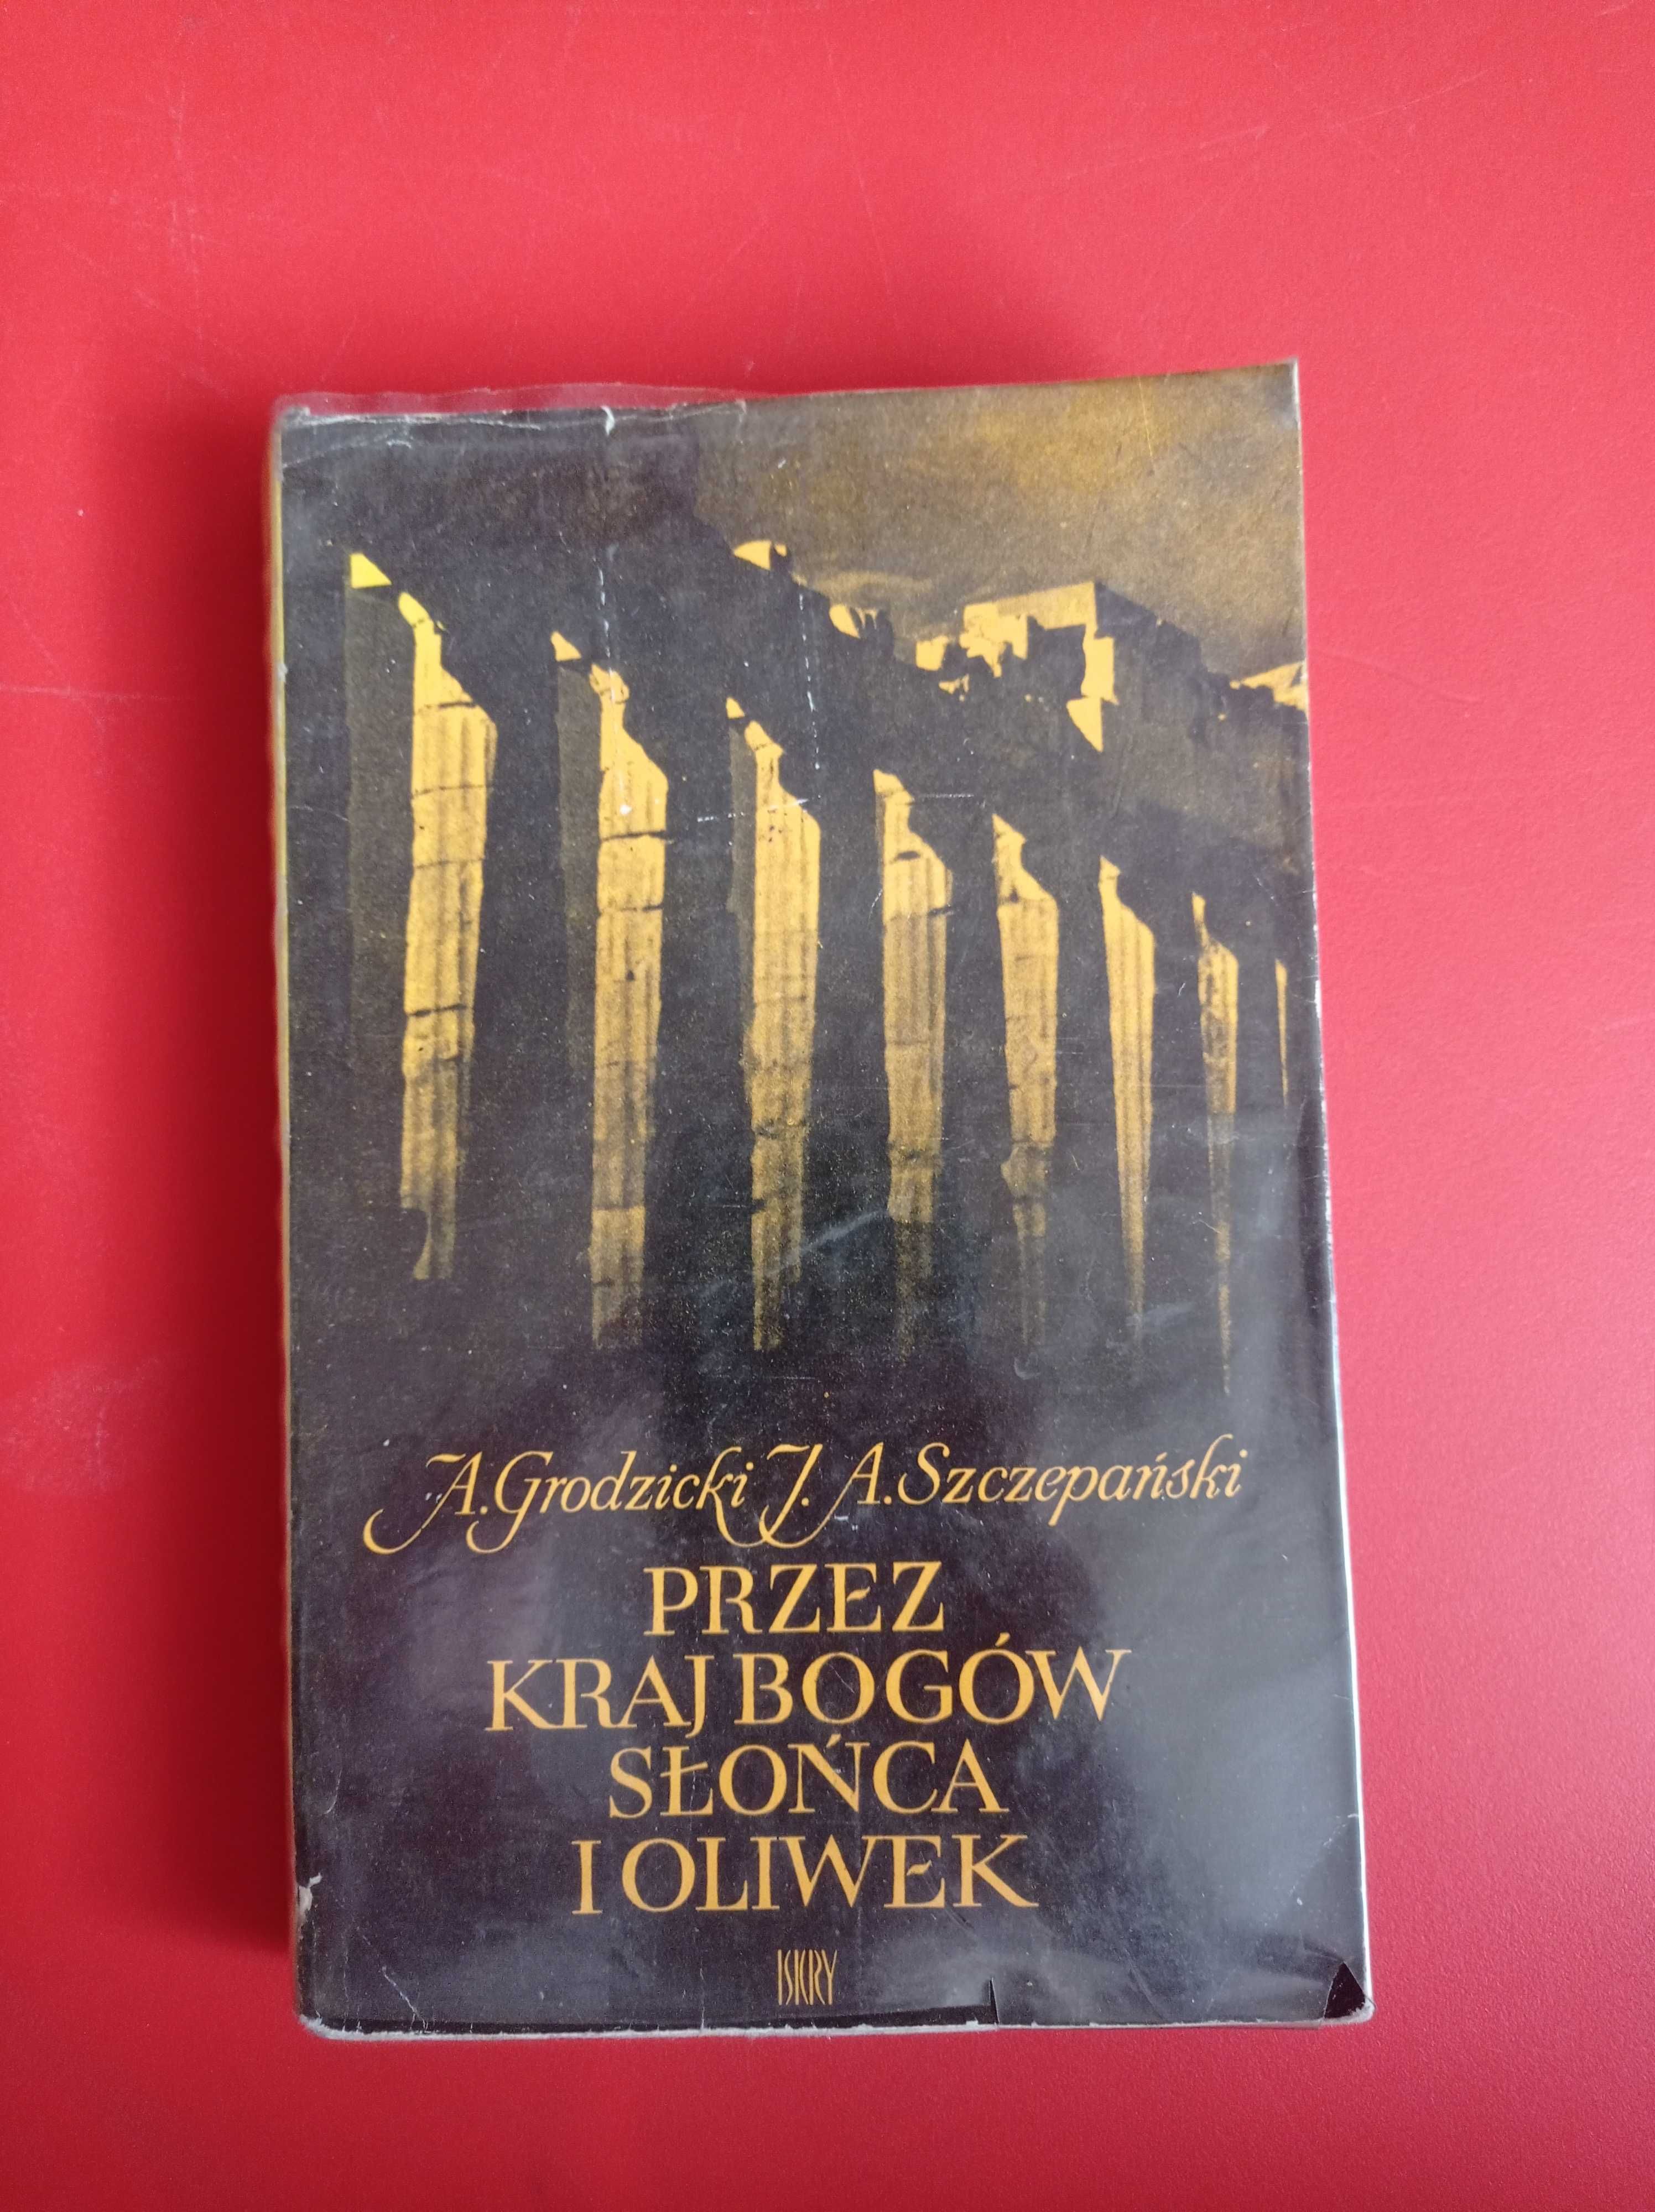 Przez kraj bogów słońca i oliwek, A. Grodzicki, A. Szczepański